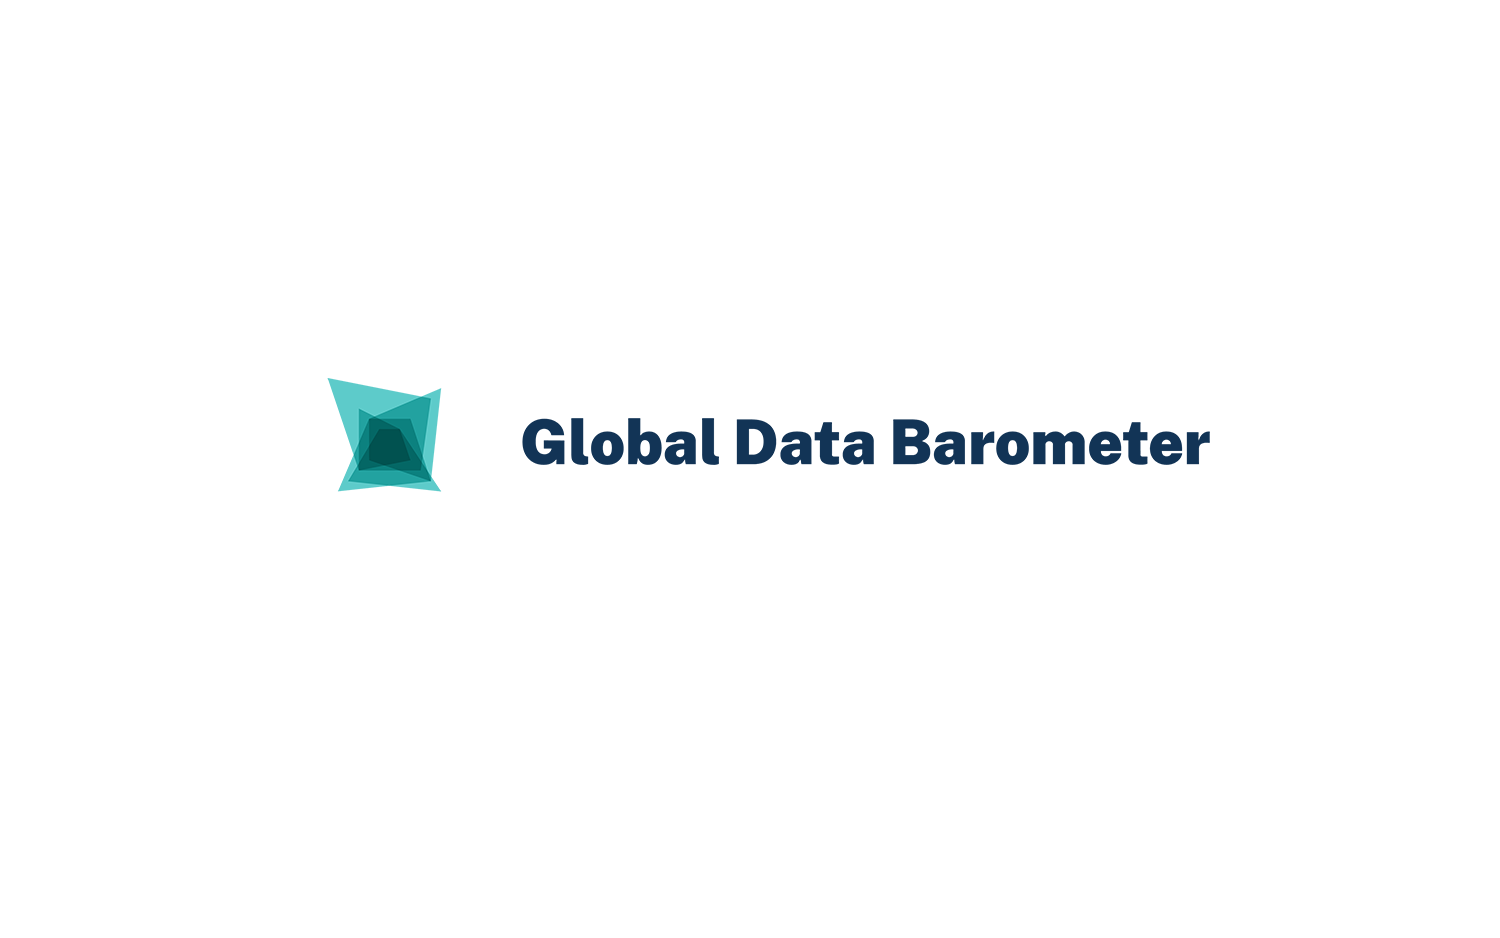 Global Data Barometer